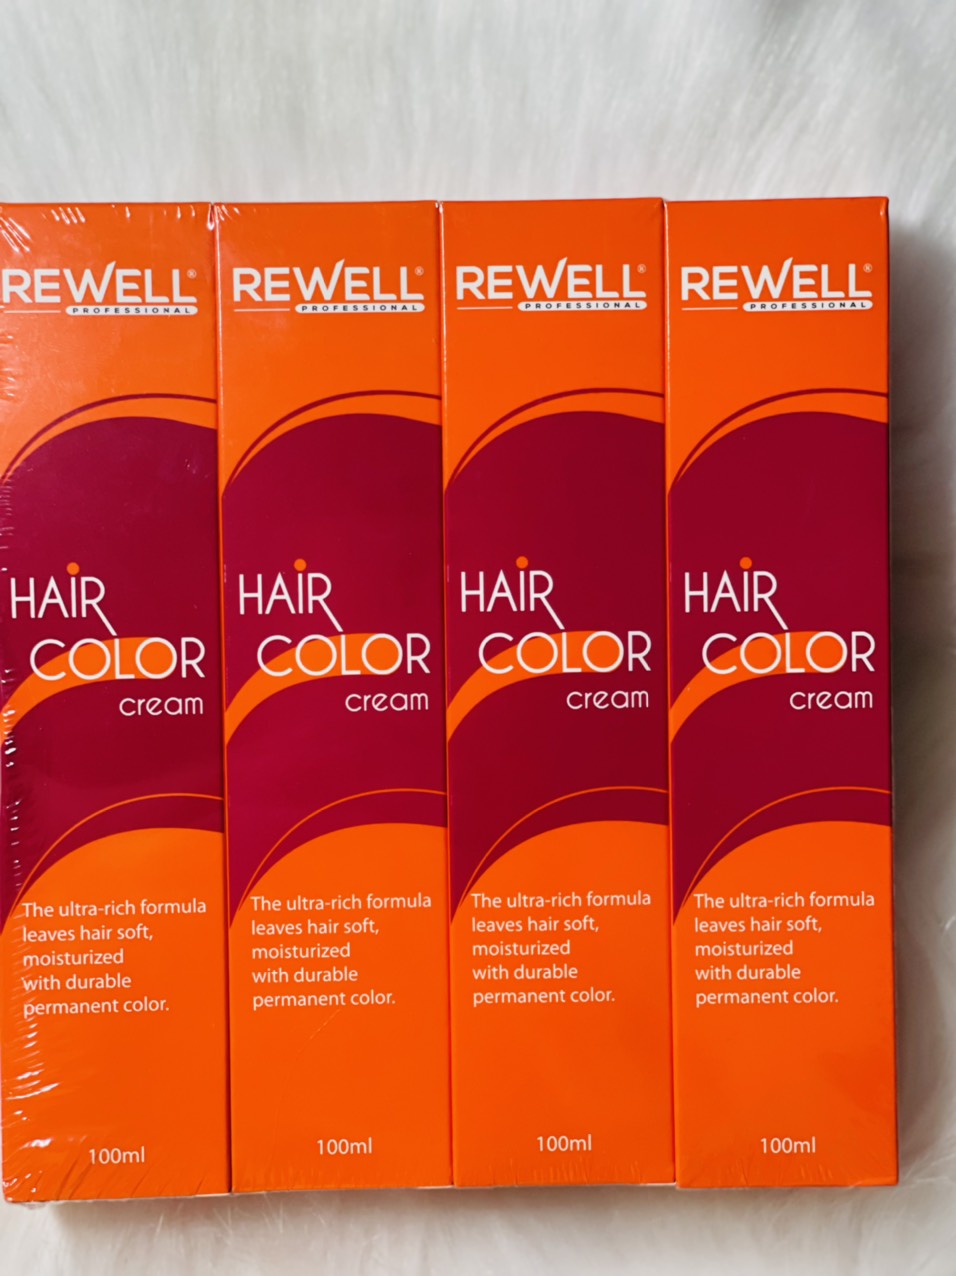 Bạn đang tìm kiếm một loại thuốc nhuộm tóc chất lượng và dễ sử dụng? Hãy tìm đến thuốc nhuộm Rewell - mang lại sự thay đổi đáng chú ý cho mái tóc của bạn. Giúp mái tóc của bạn đẹp, bóng mượt và giữ màu lâu hơn trong một thời gian dài.